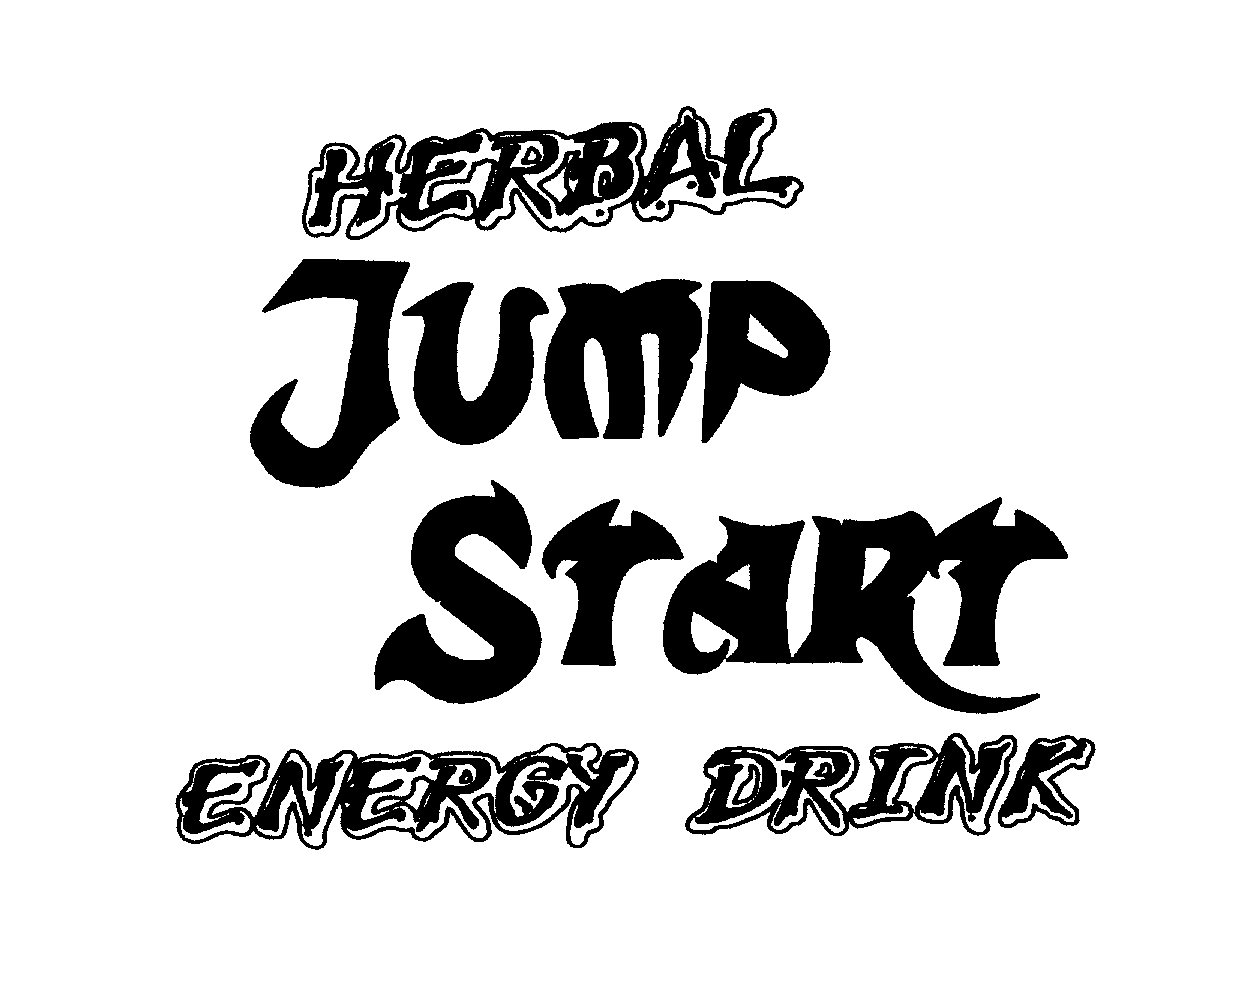  HERBAL JUMP START ENERGY DRINK